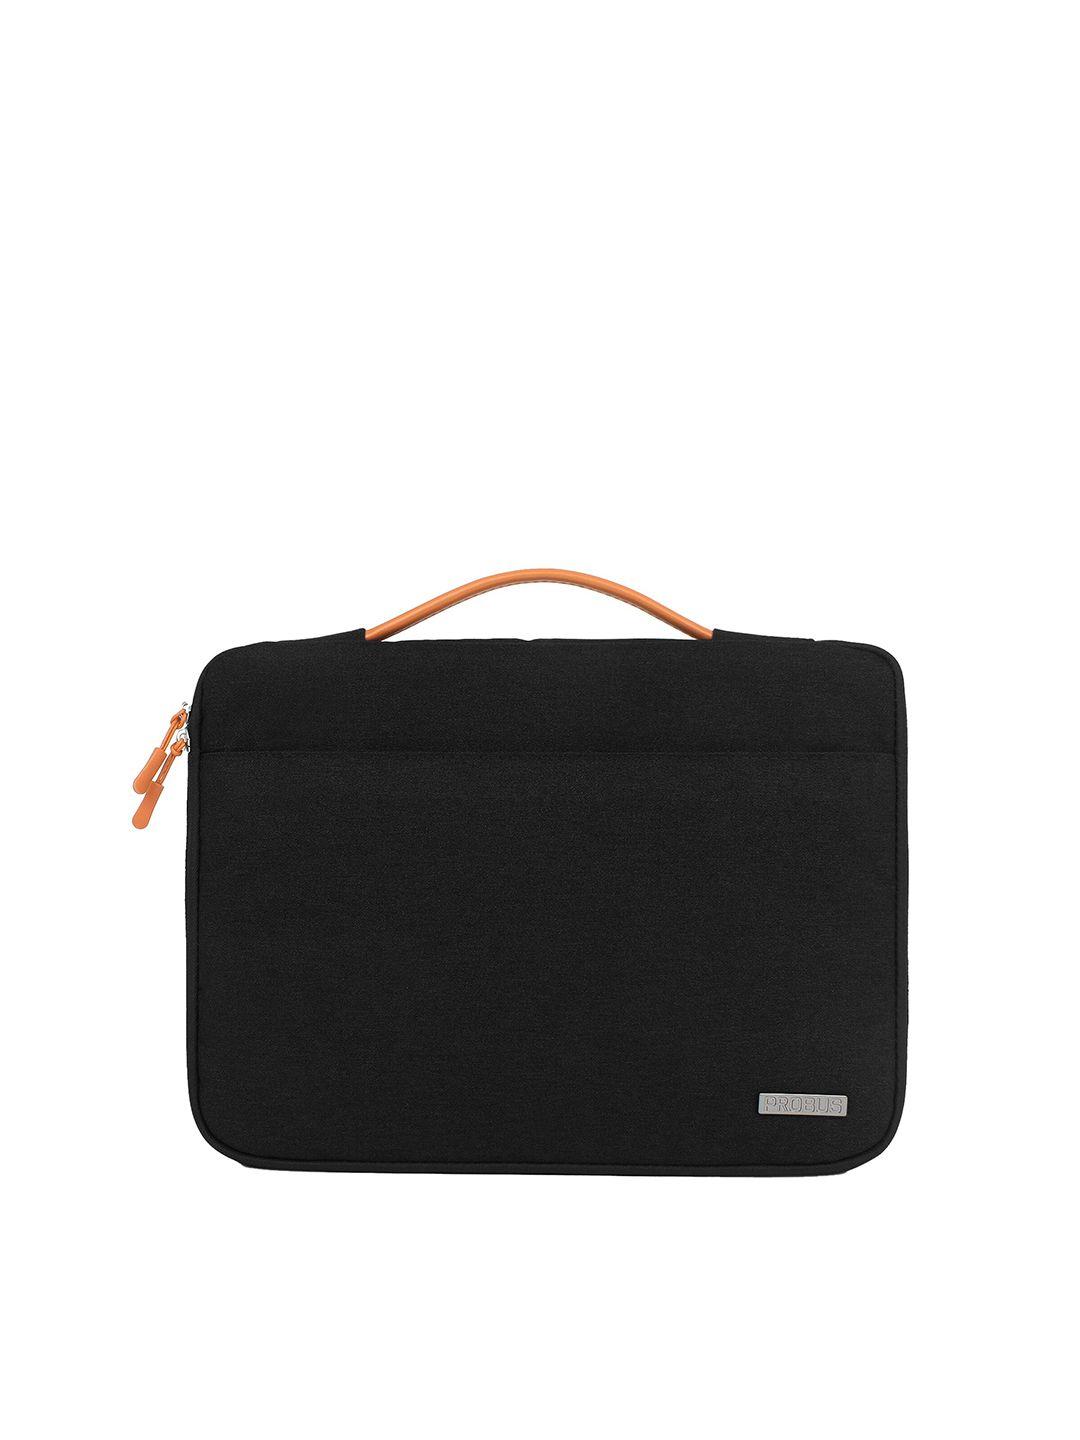 probus unisex black & orange laptop bag